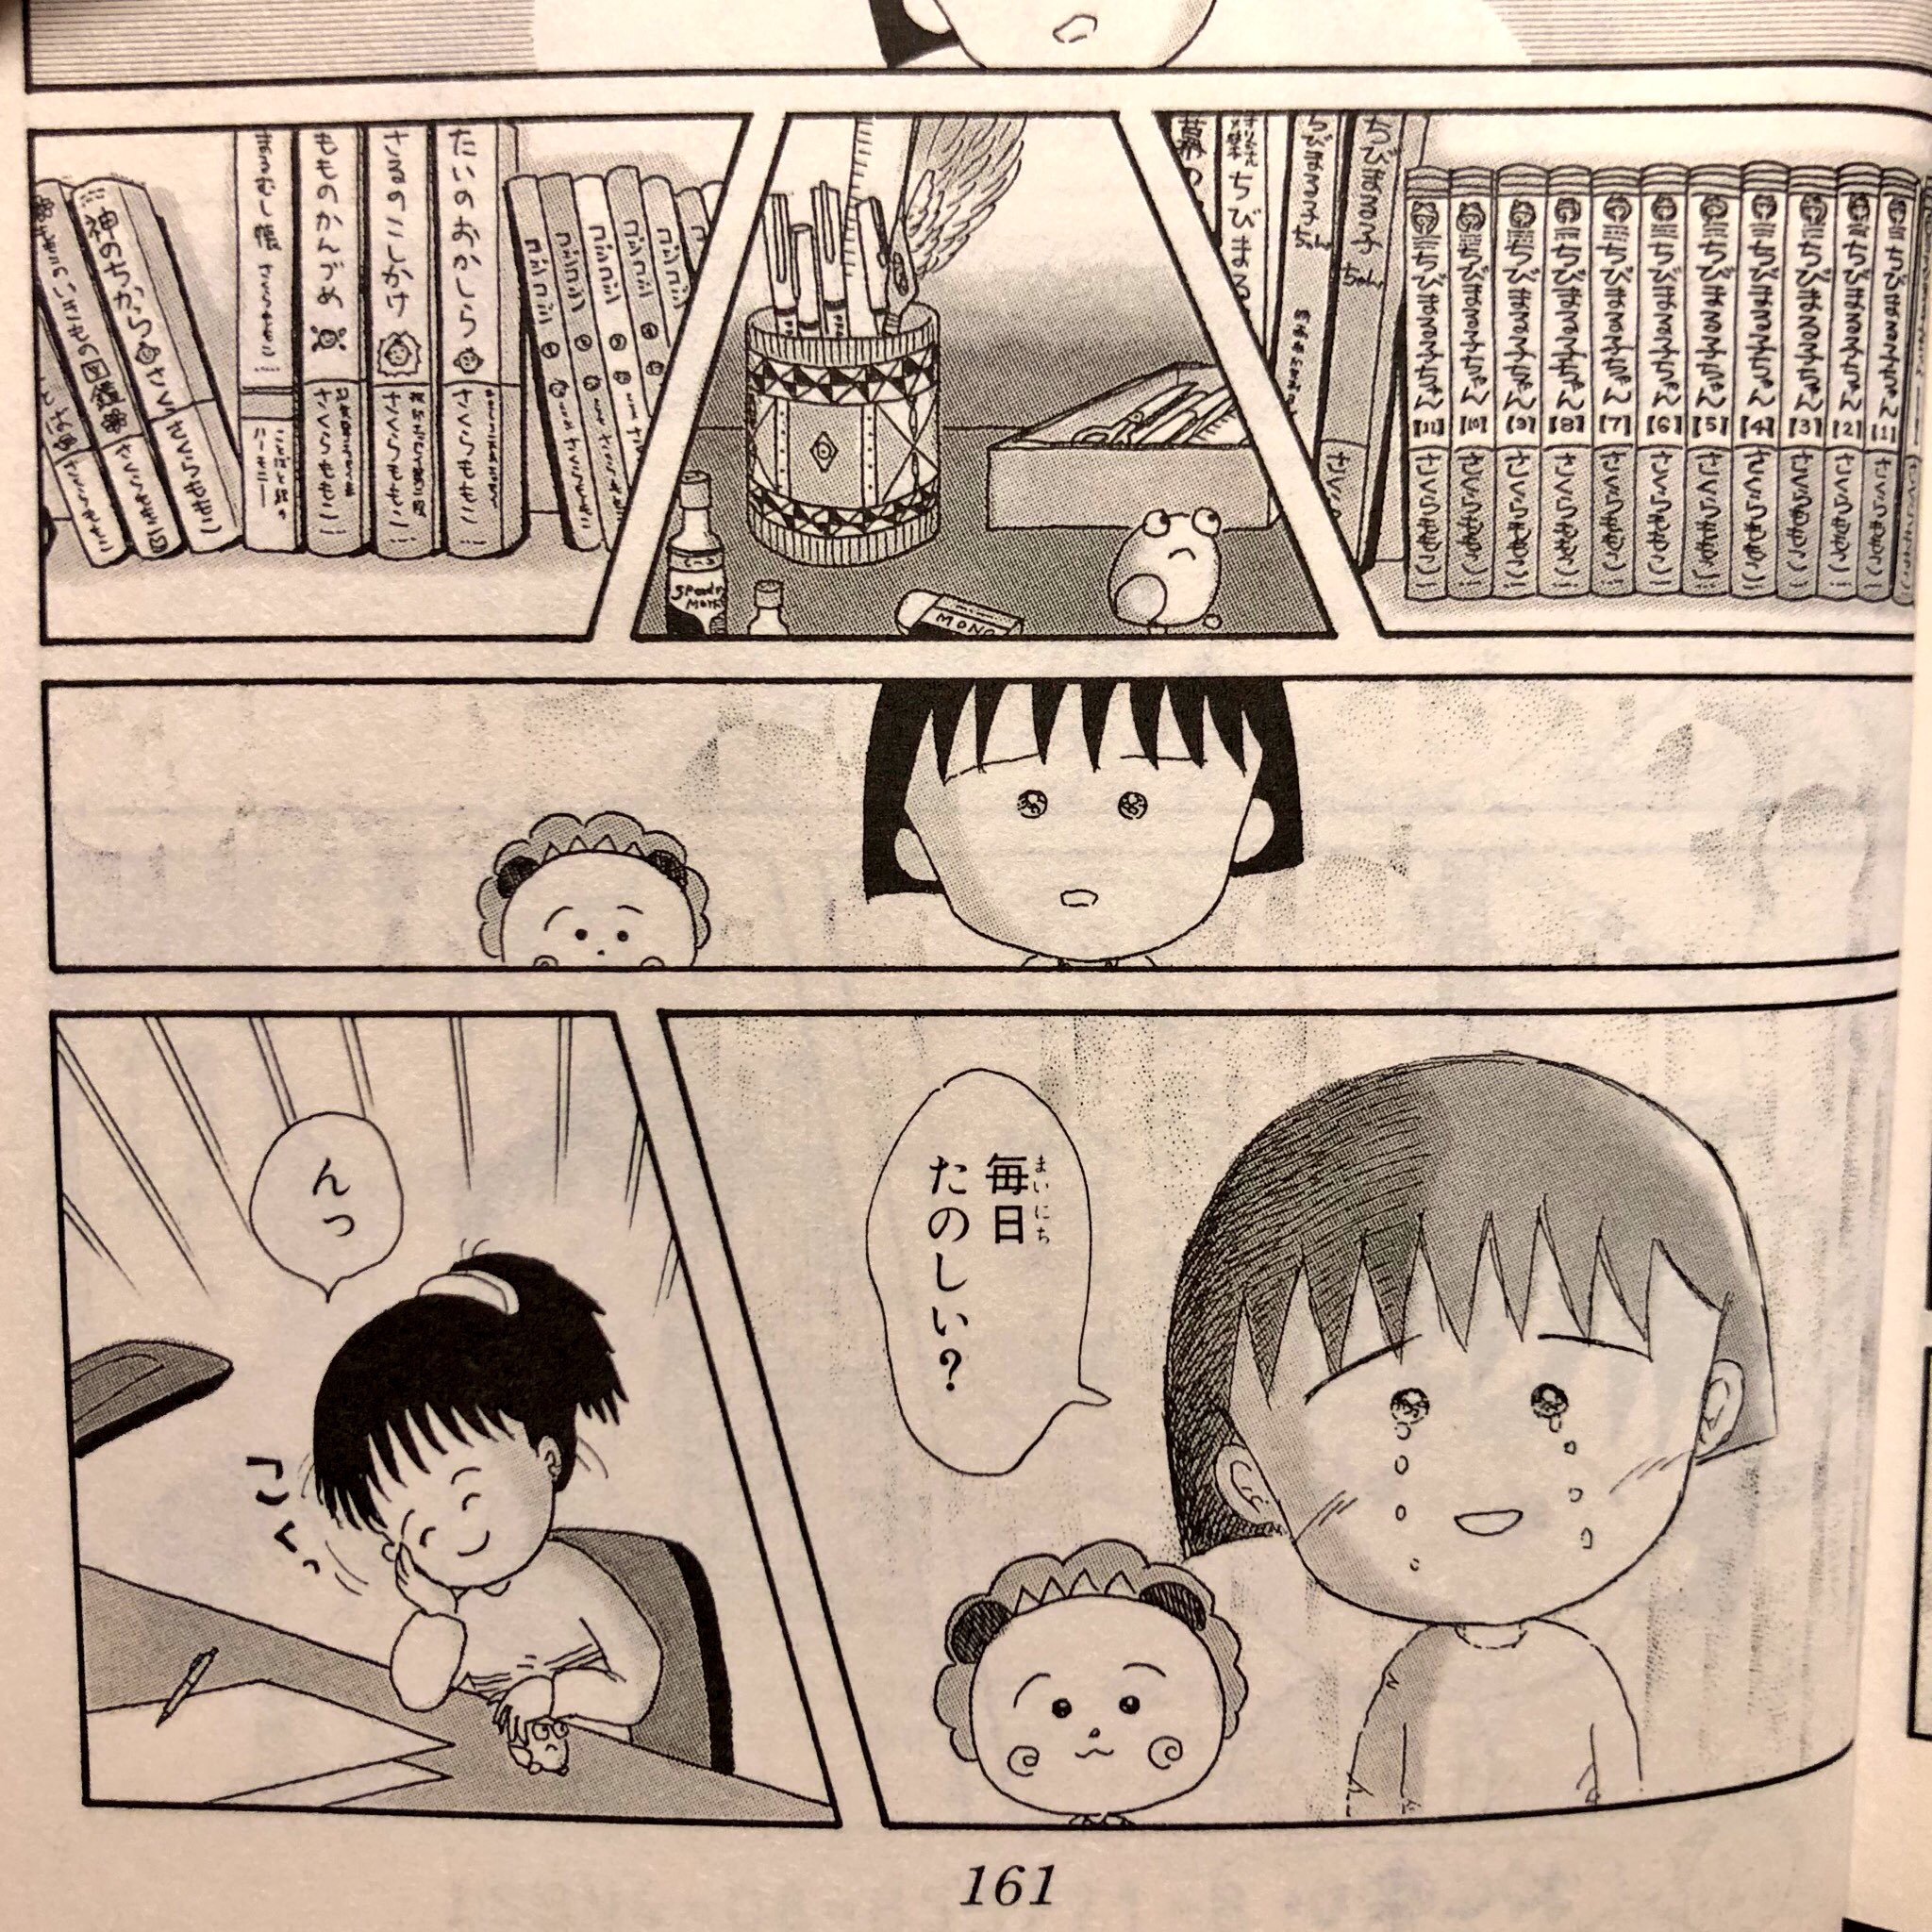 Shinichi Ando ちびまる子ちゃん で まる子が大人になった自分 さくらももこ に会いに行くという回があって 大人 になって大人らしくない自分にショックを受けるんだけど 実は漫画家という 夢の職業 についてることを知って嬉しくて涙する という